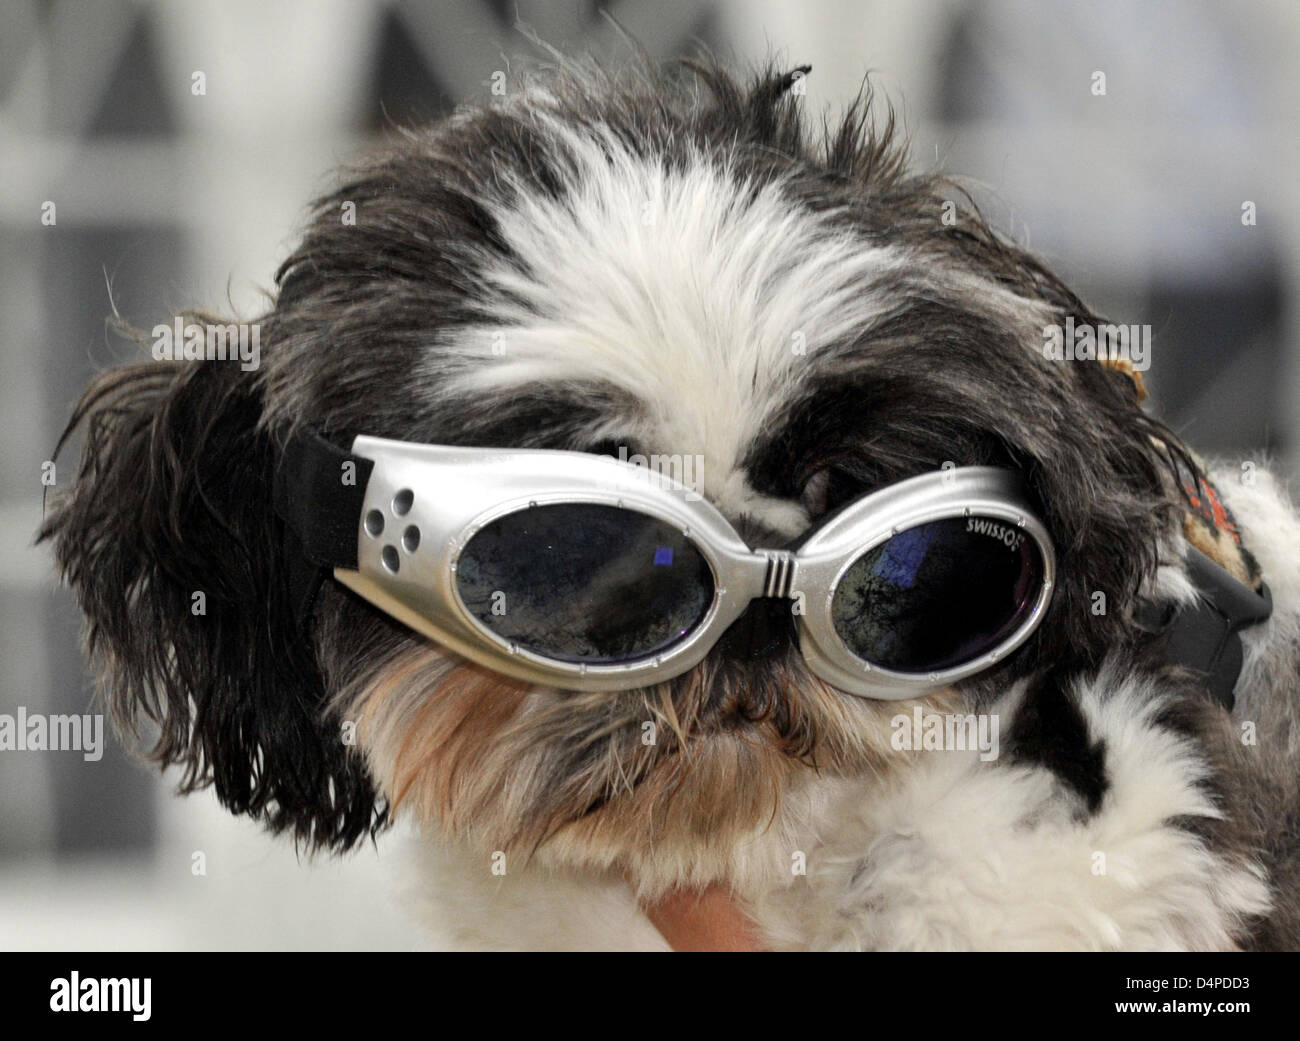 Lini?, un shih tzu, lleva gafas de para perros durante el amante de los perros?s festival en Castle Greifenberg, Alemania, 06 junio de 2009. El festival es todo acerca